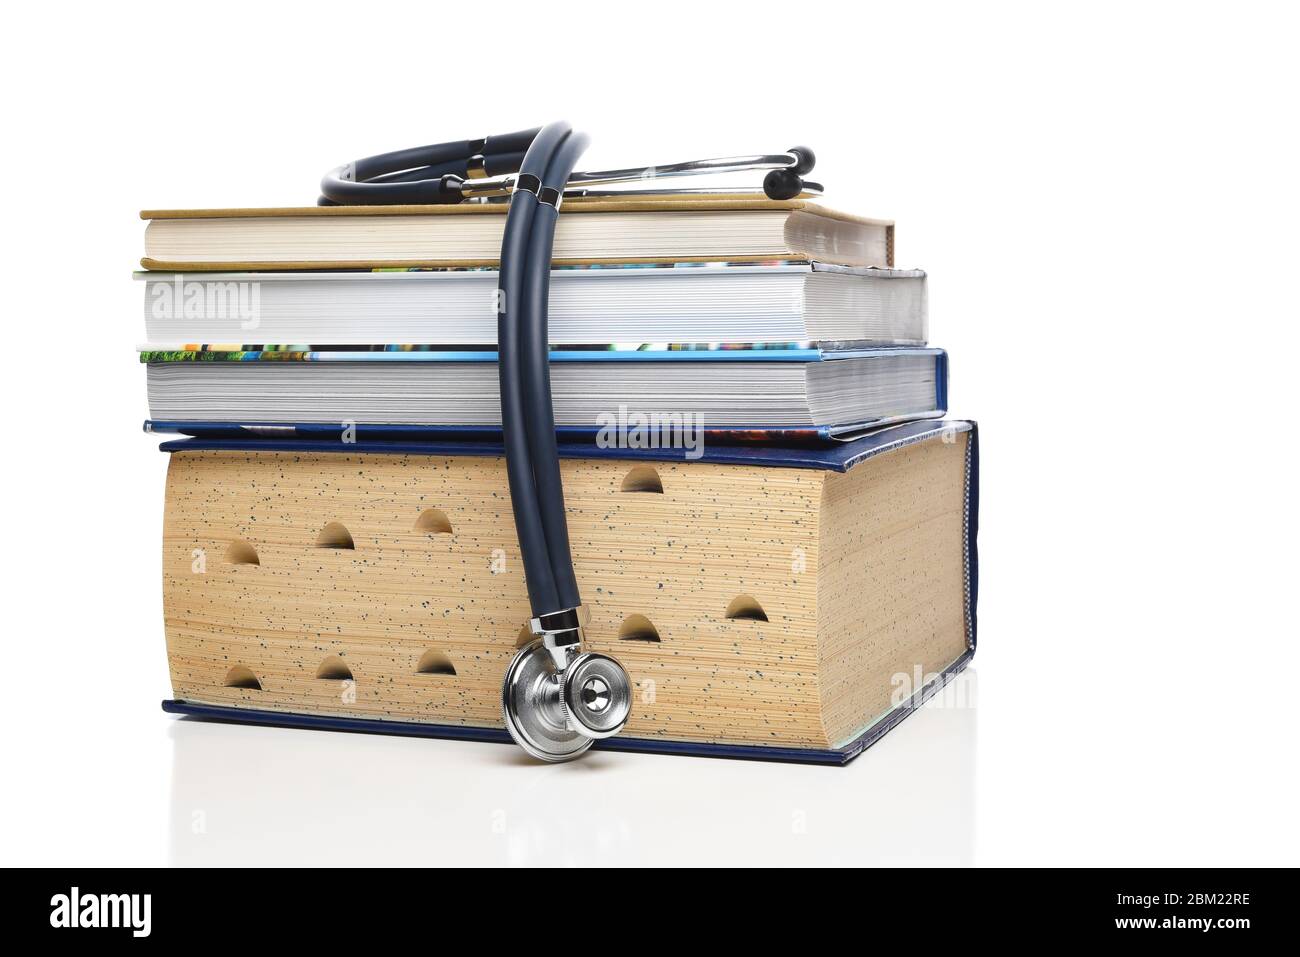 Concept de formation professionnelle médicale. Un stéthoscope drapé sur une pile de livres médicaux, isolés sur du blanc. Banque D'Images